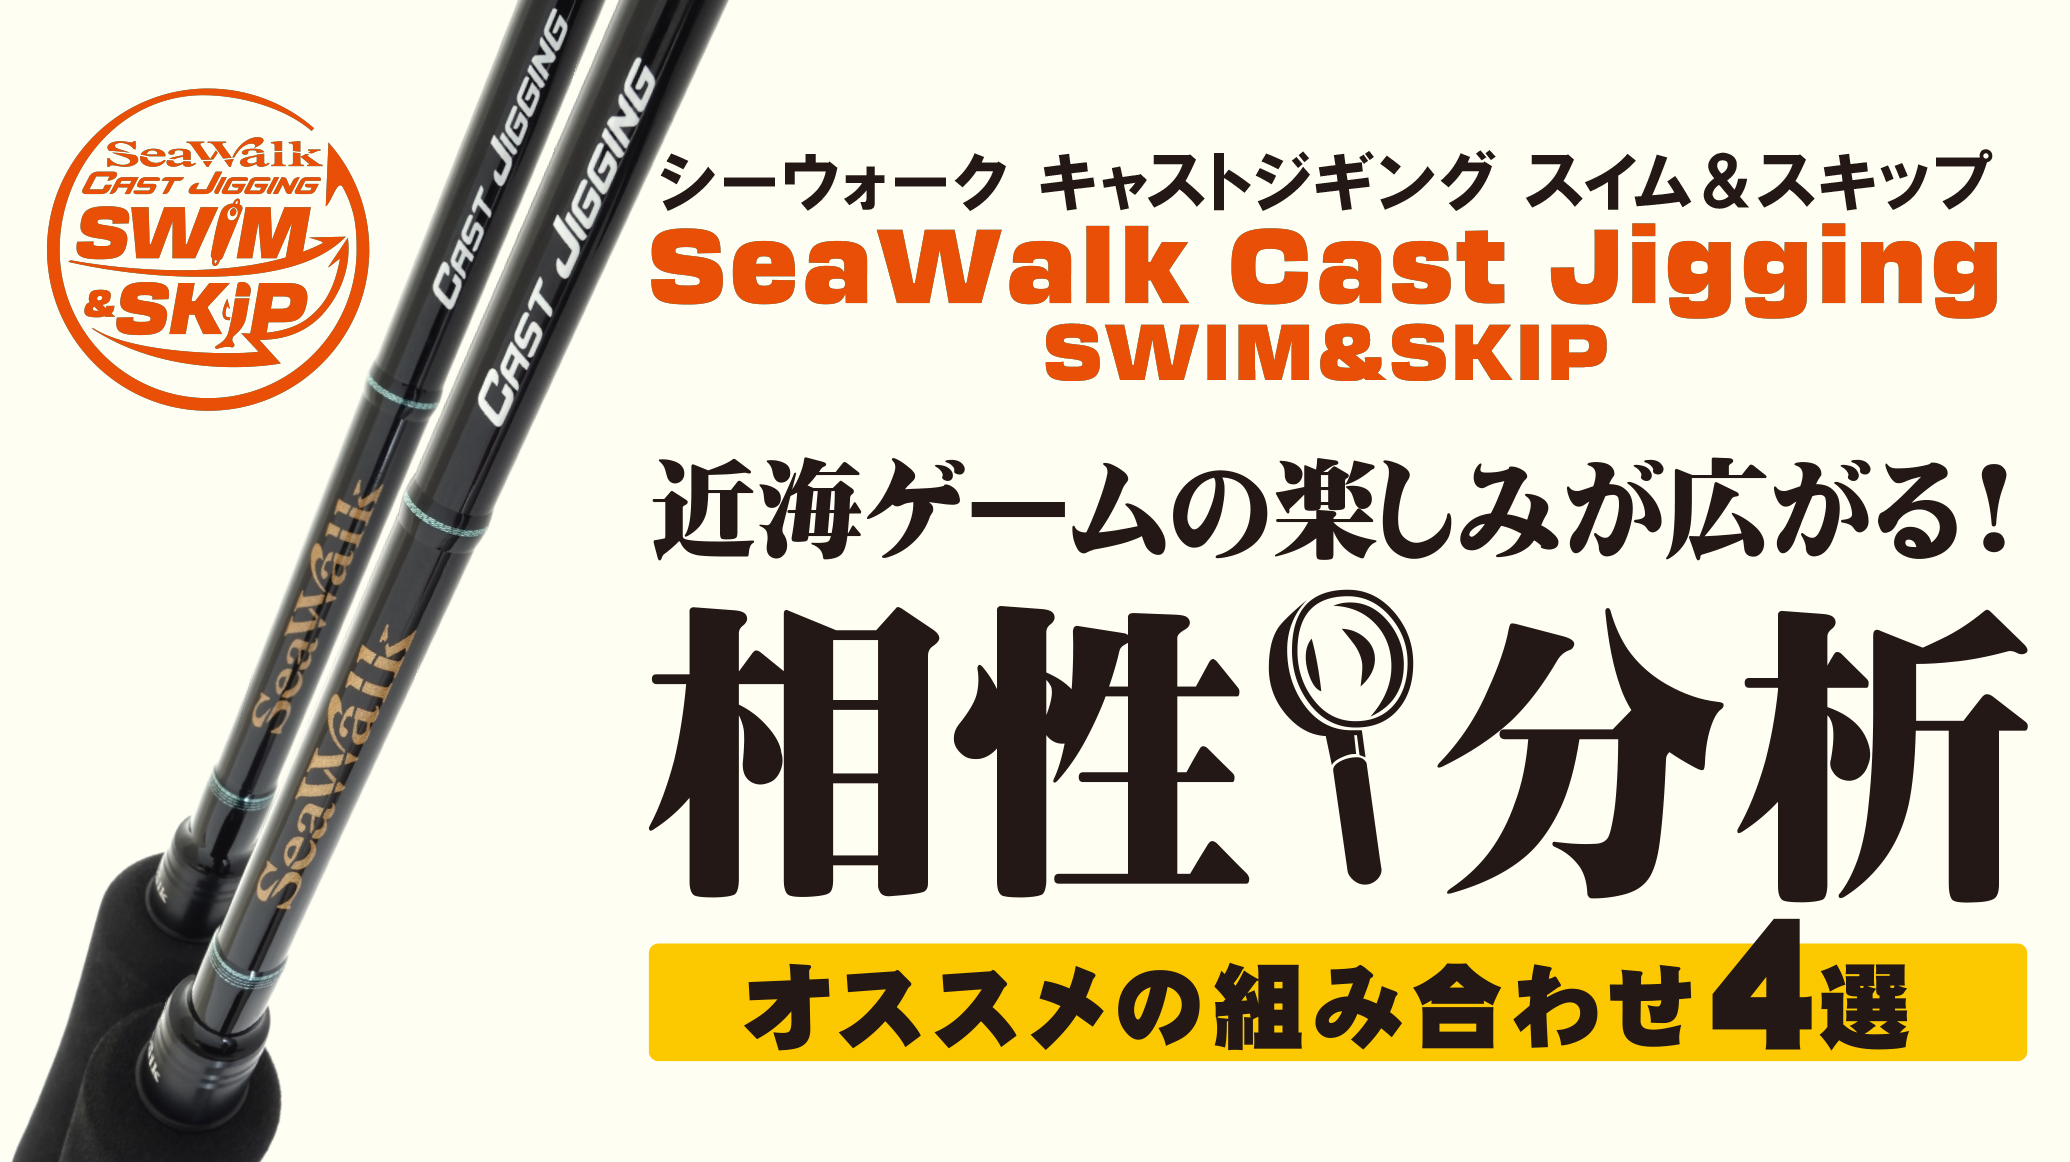 【解説ブログ】SeaWalk Cast-Jigging Swim&Skip 他シリーズとの相性分析 – オススメの組み合わせ4選